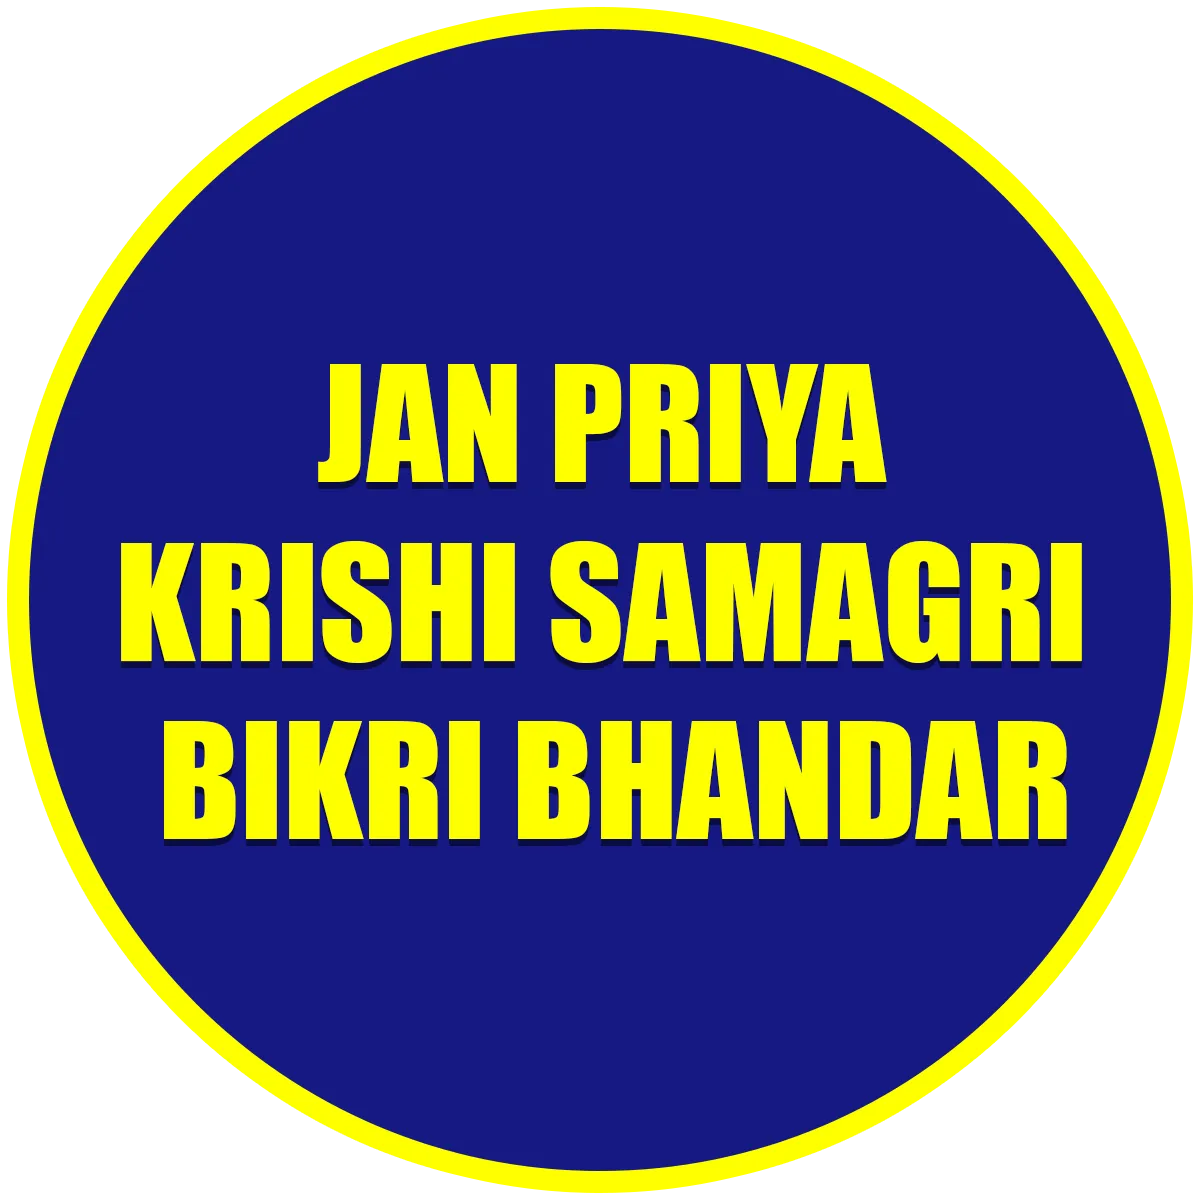 Janapriya Krishi Samagri Bikri Bhandar